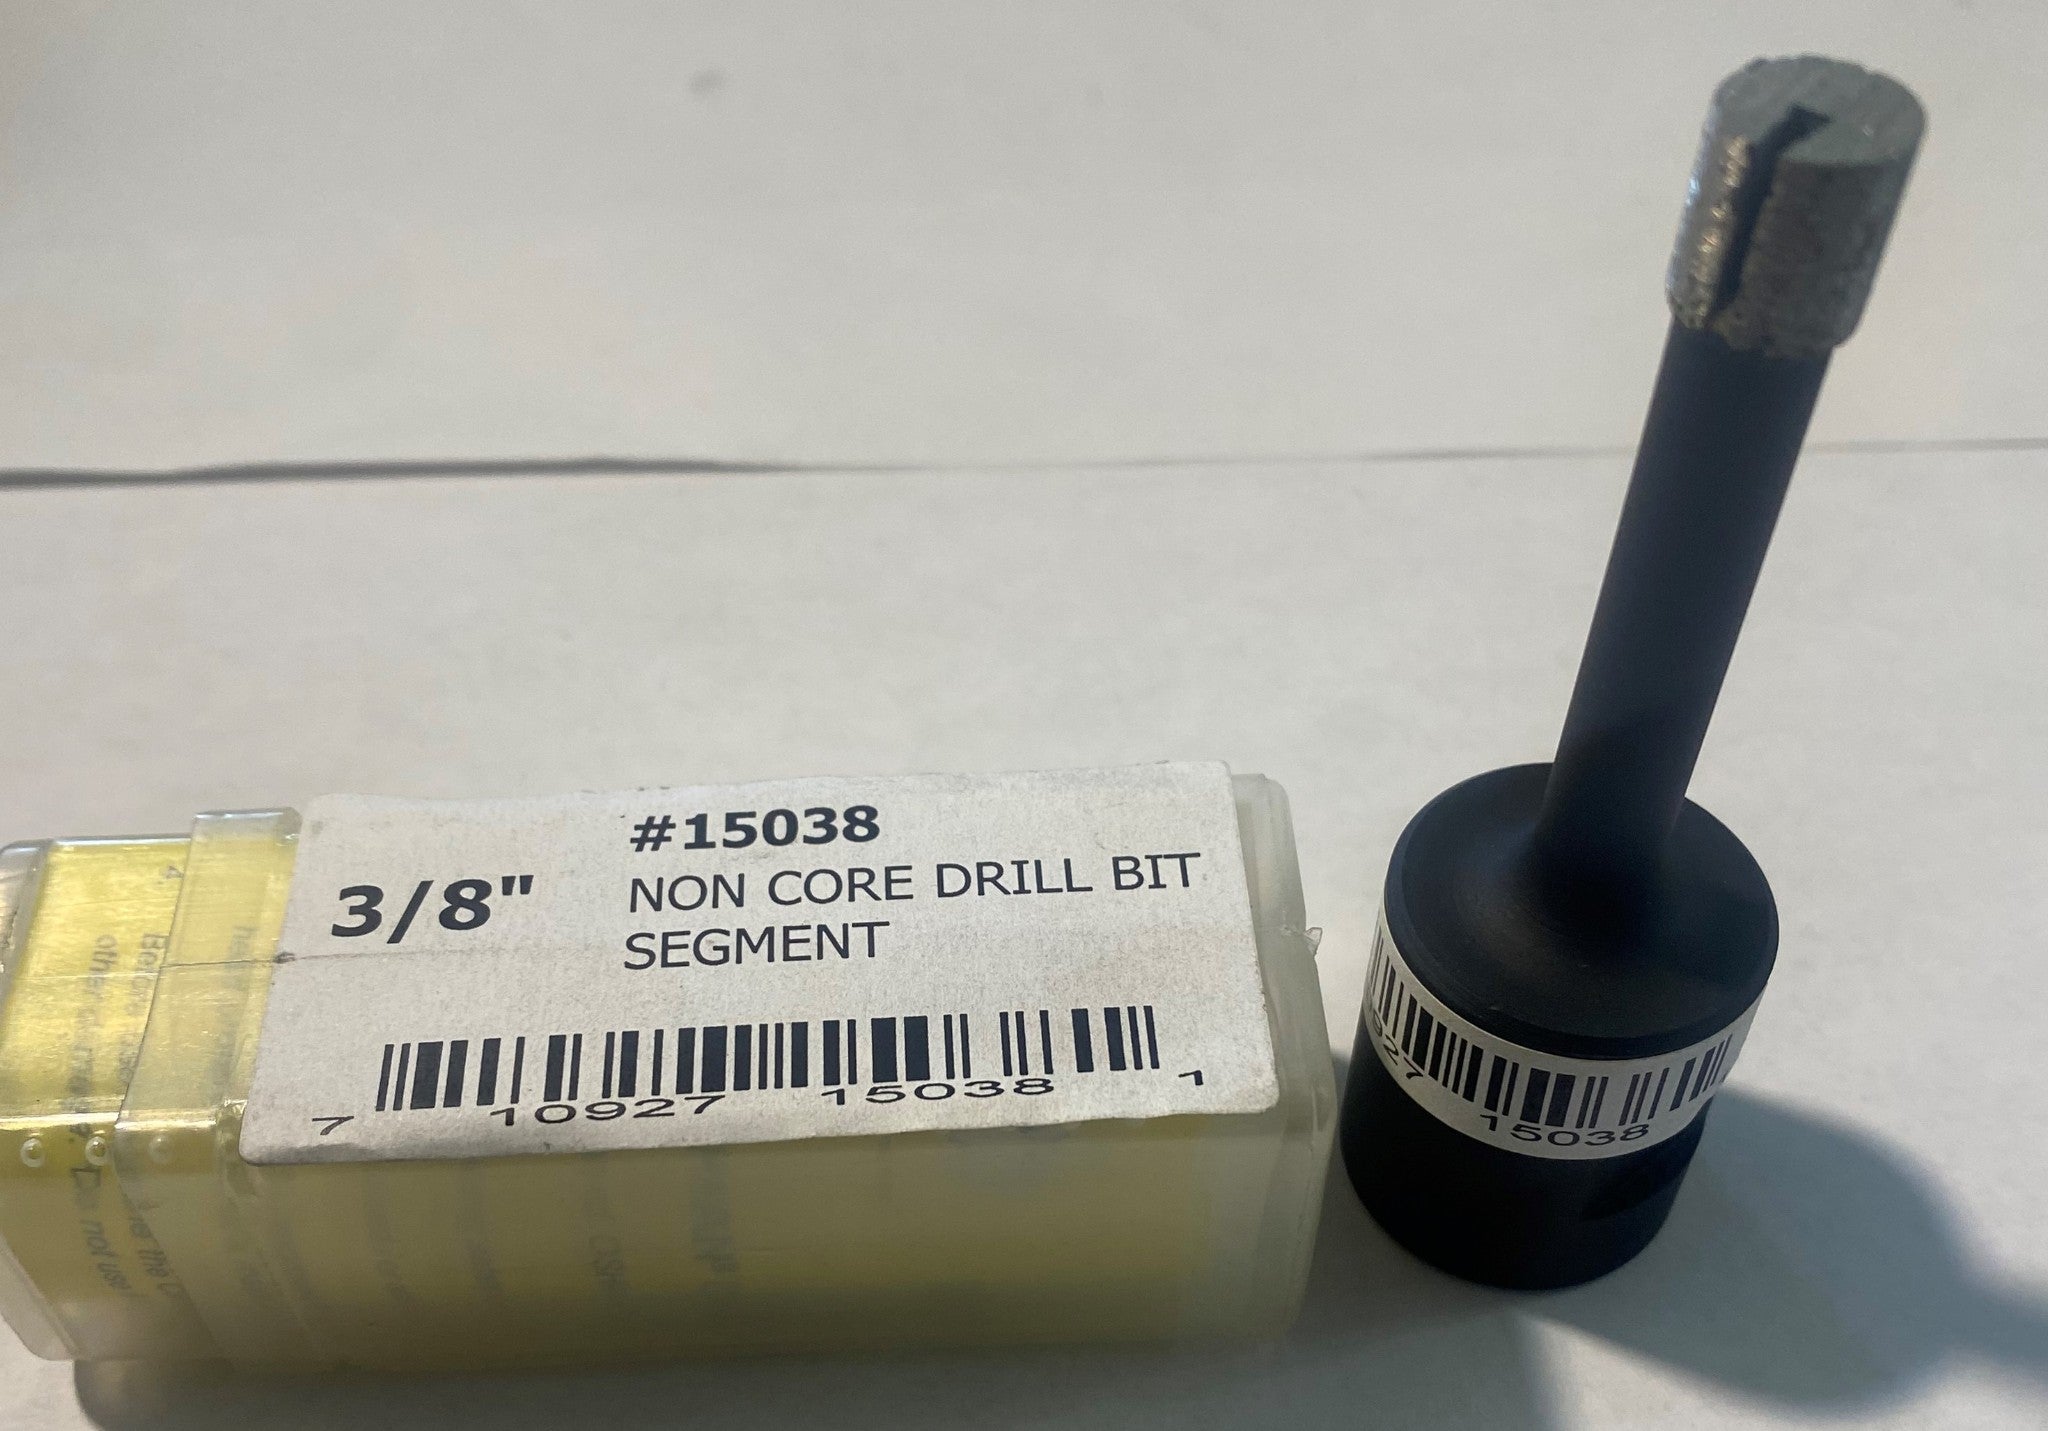 Caiman 15038 3/8" Segmented Non Core Drill Bit